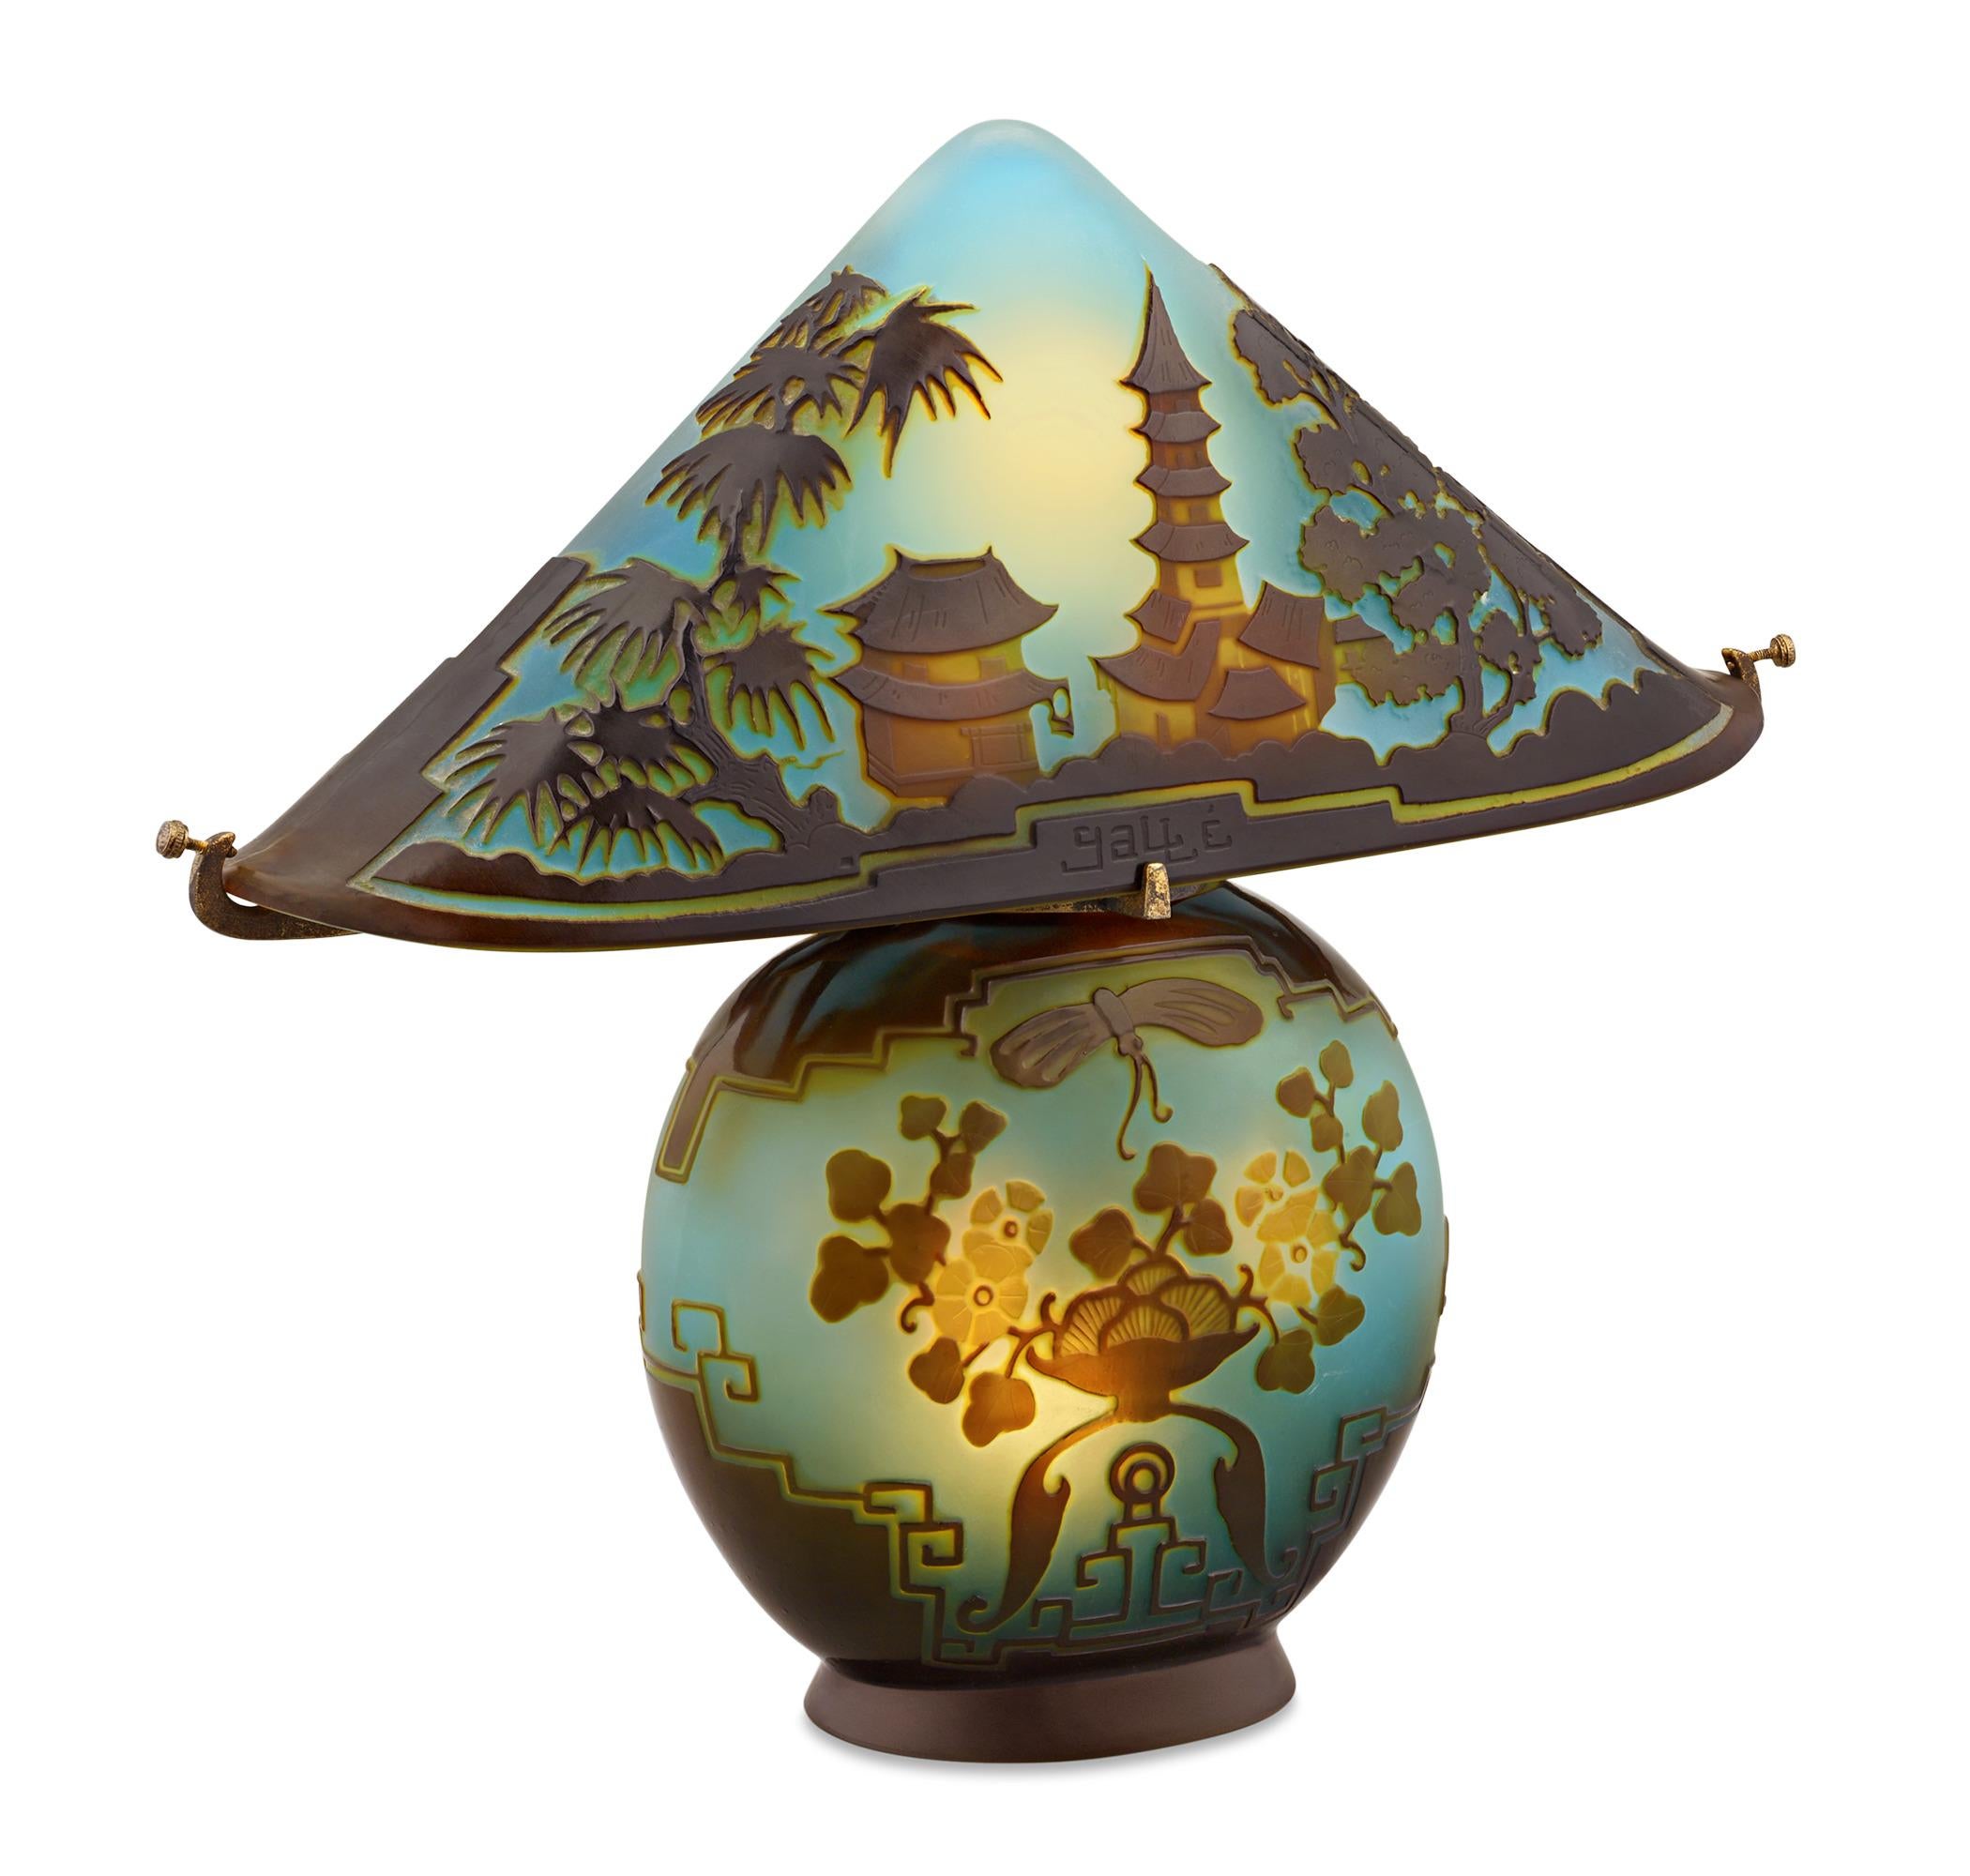 Cette lampe en verre Pagoda Cameo est un exemple très rare et convoité de la maîtrise de la verrerie d'Émile Gallé. Des couches de couleurs vives, allant du jaune doré au mauve, rayonnent sur un fond de verre bleu-vert élégamment dépoli pour former